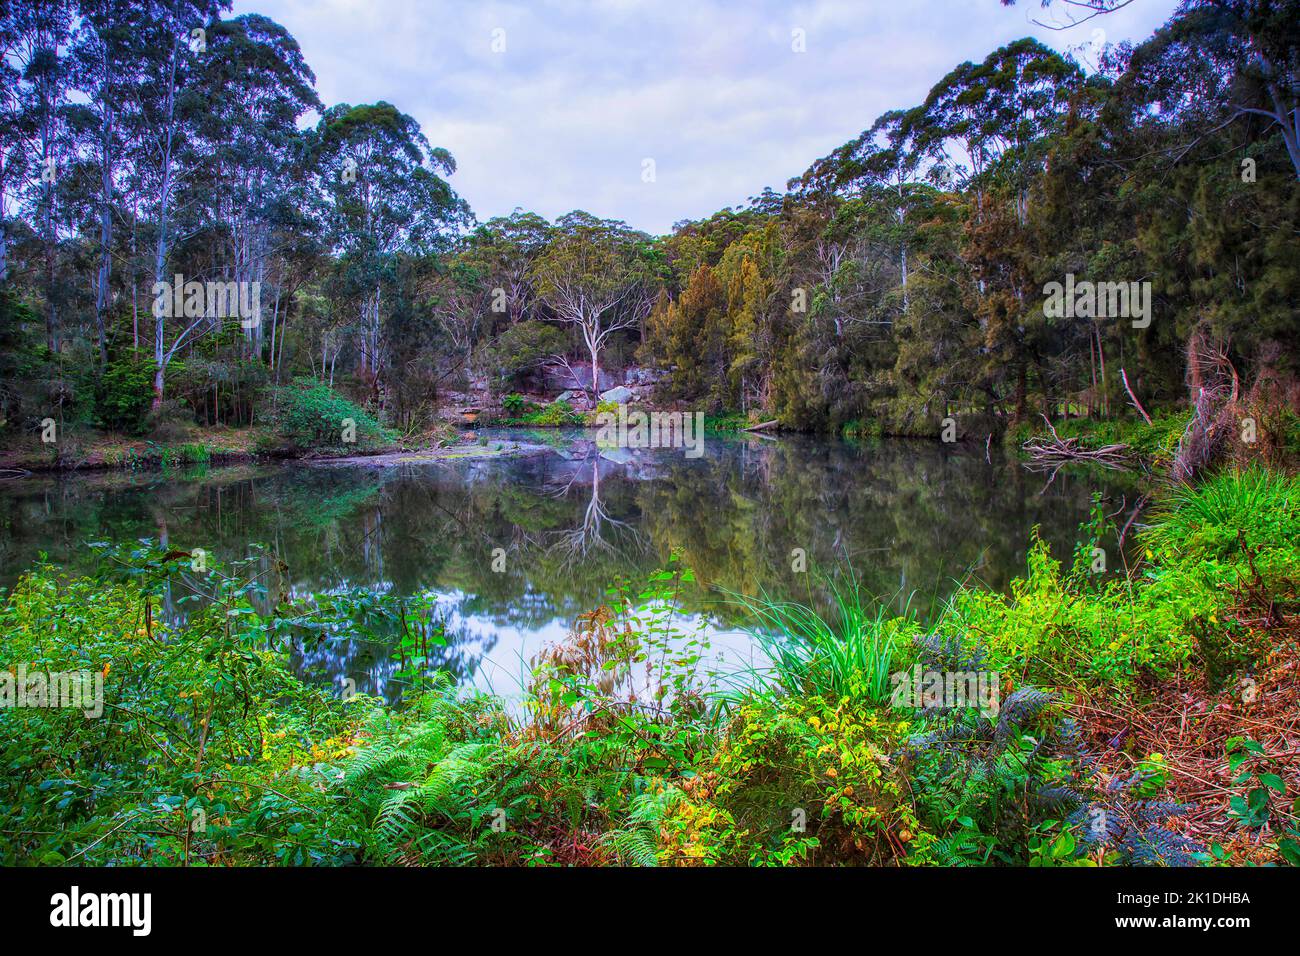 Malerischer grüner Lane Cove River im Nationalpark von Sydney, Australien - üppige Vegetation. Stockfoto